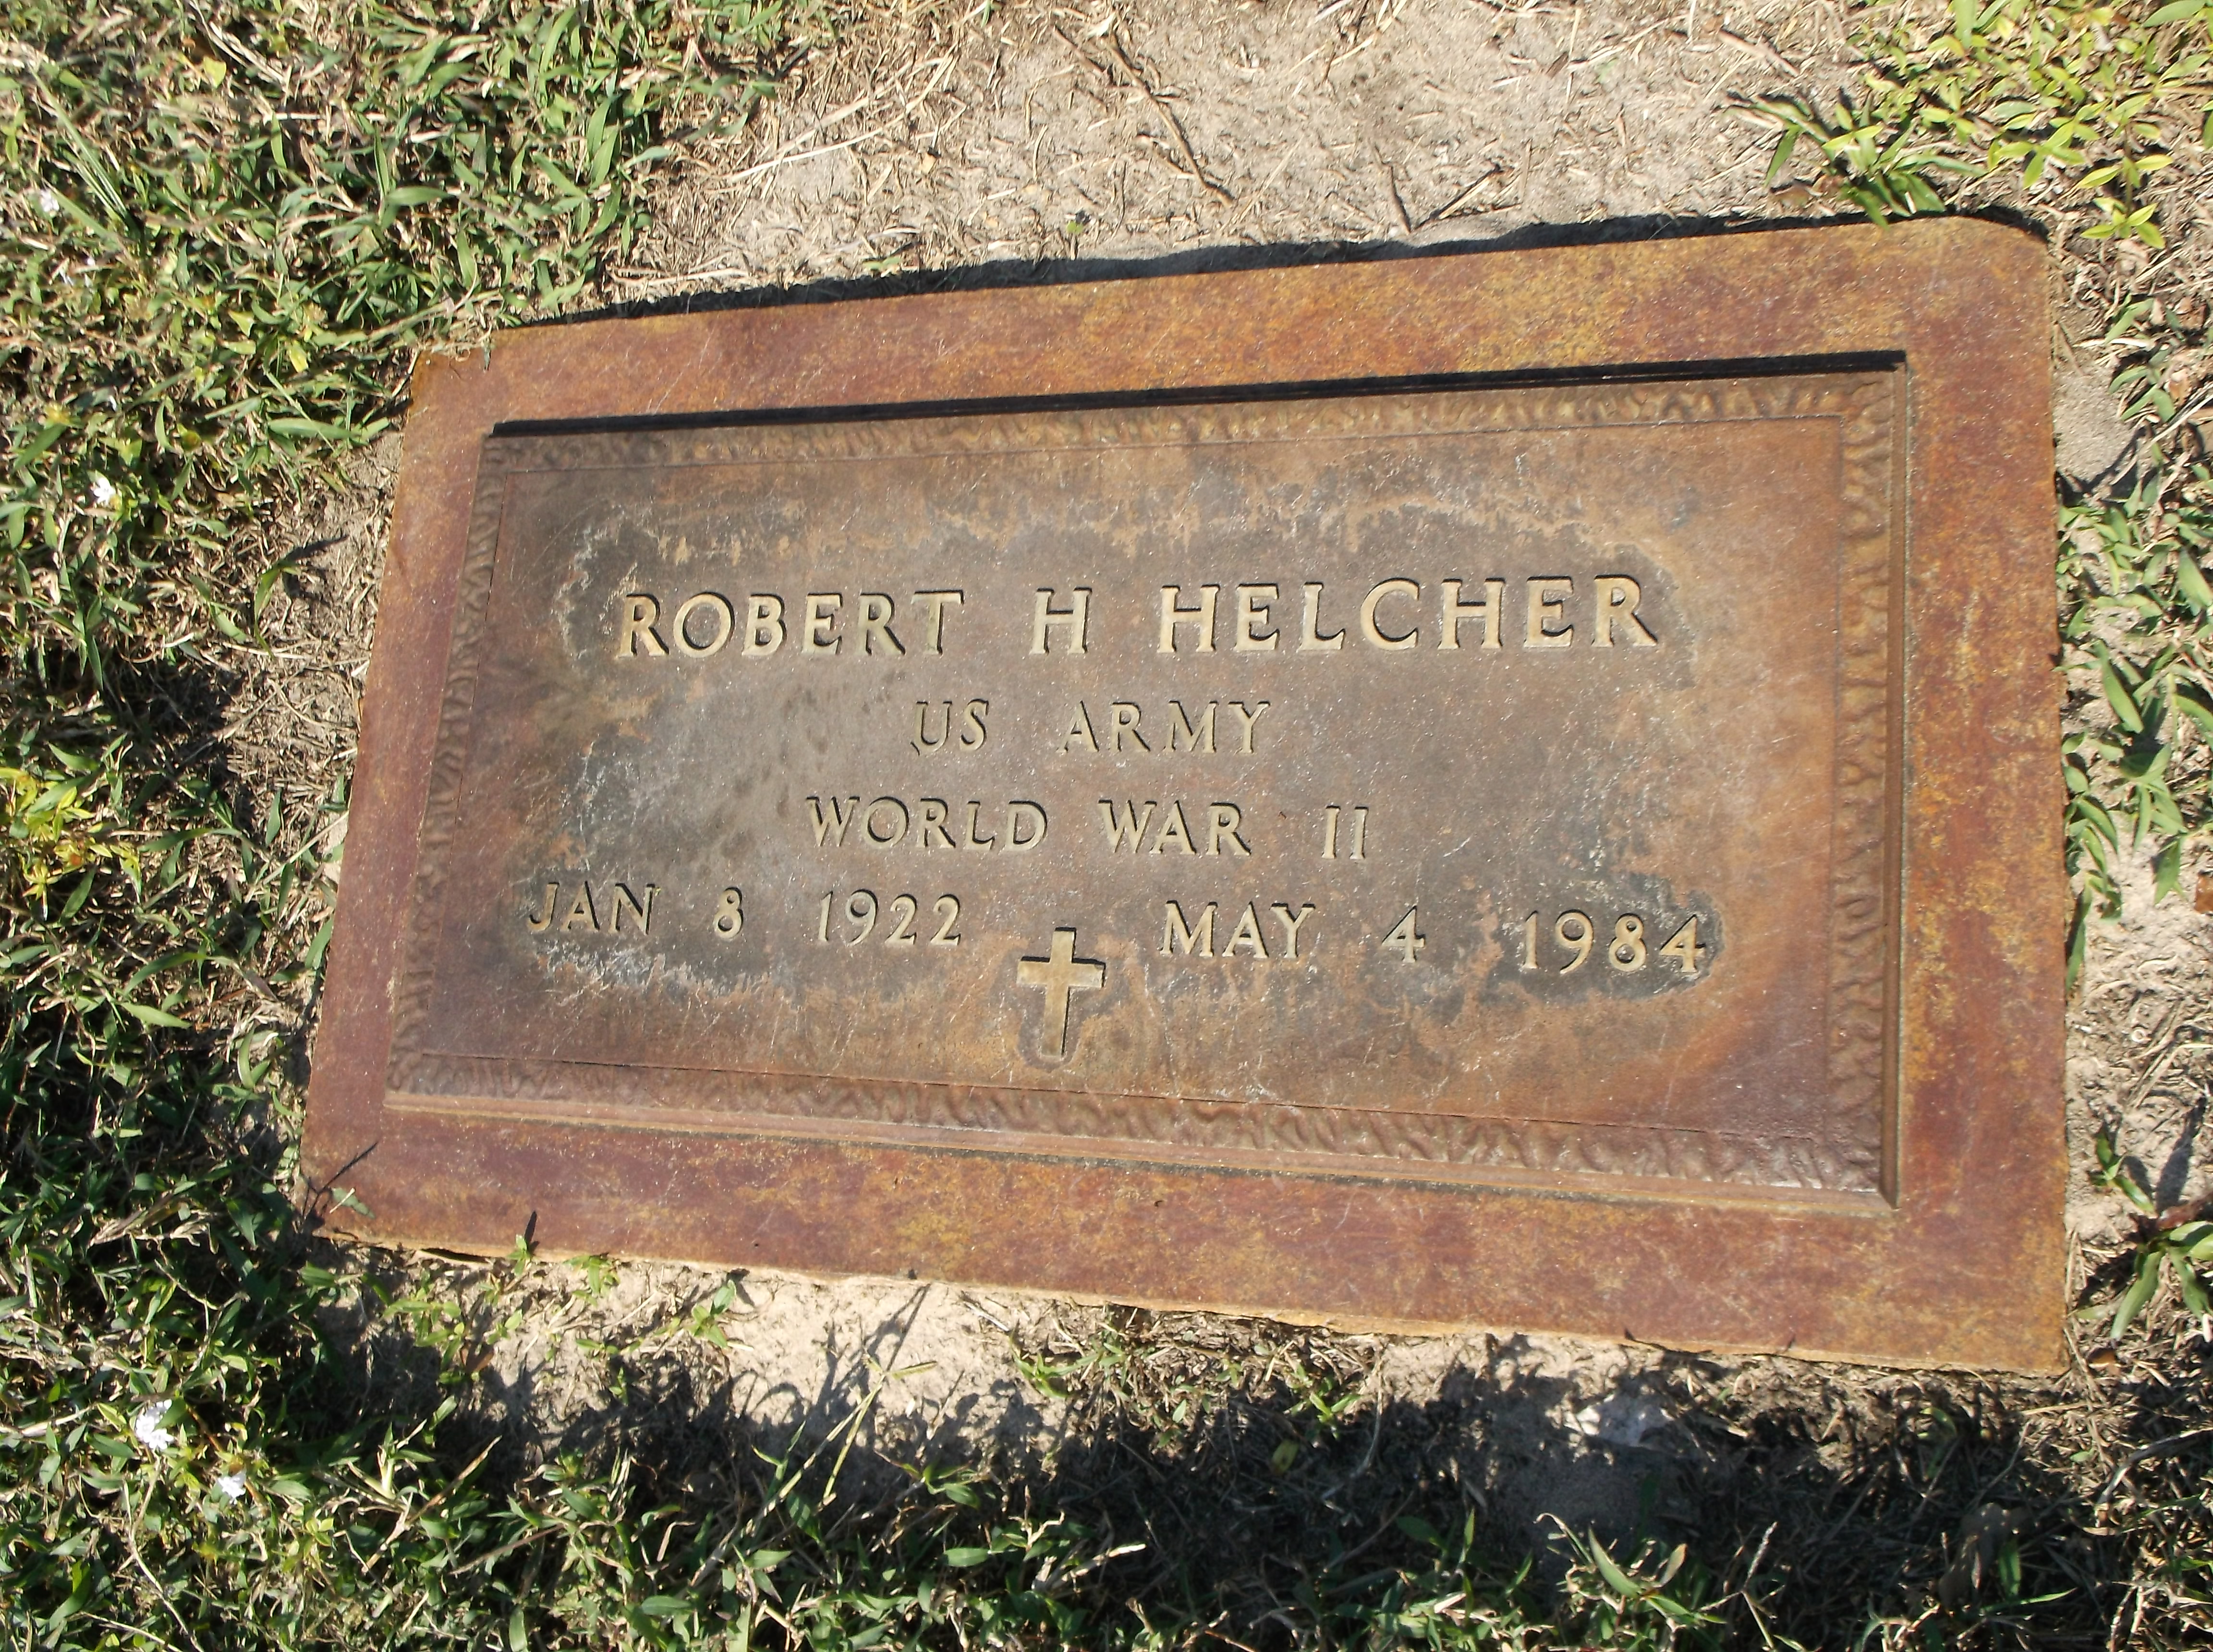 Robert H Helcher